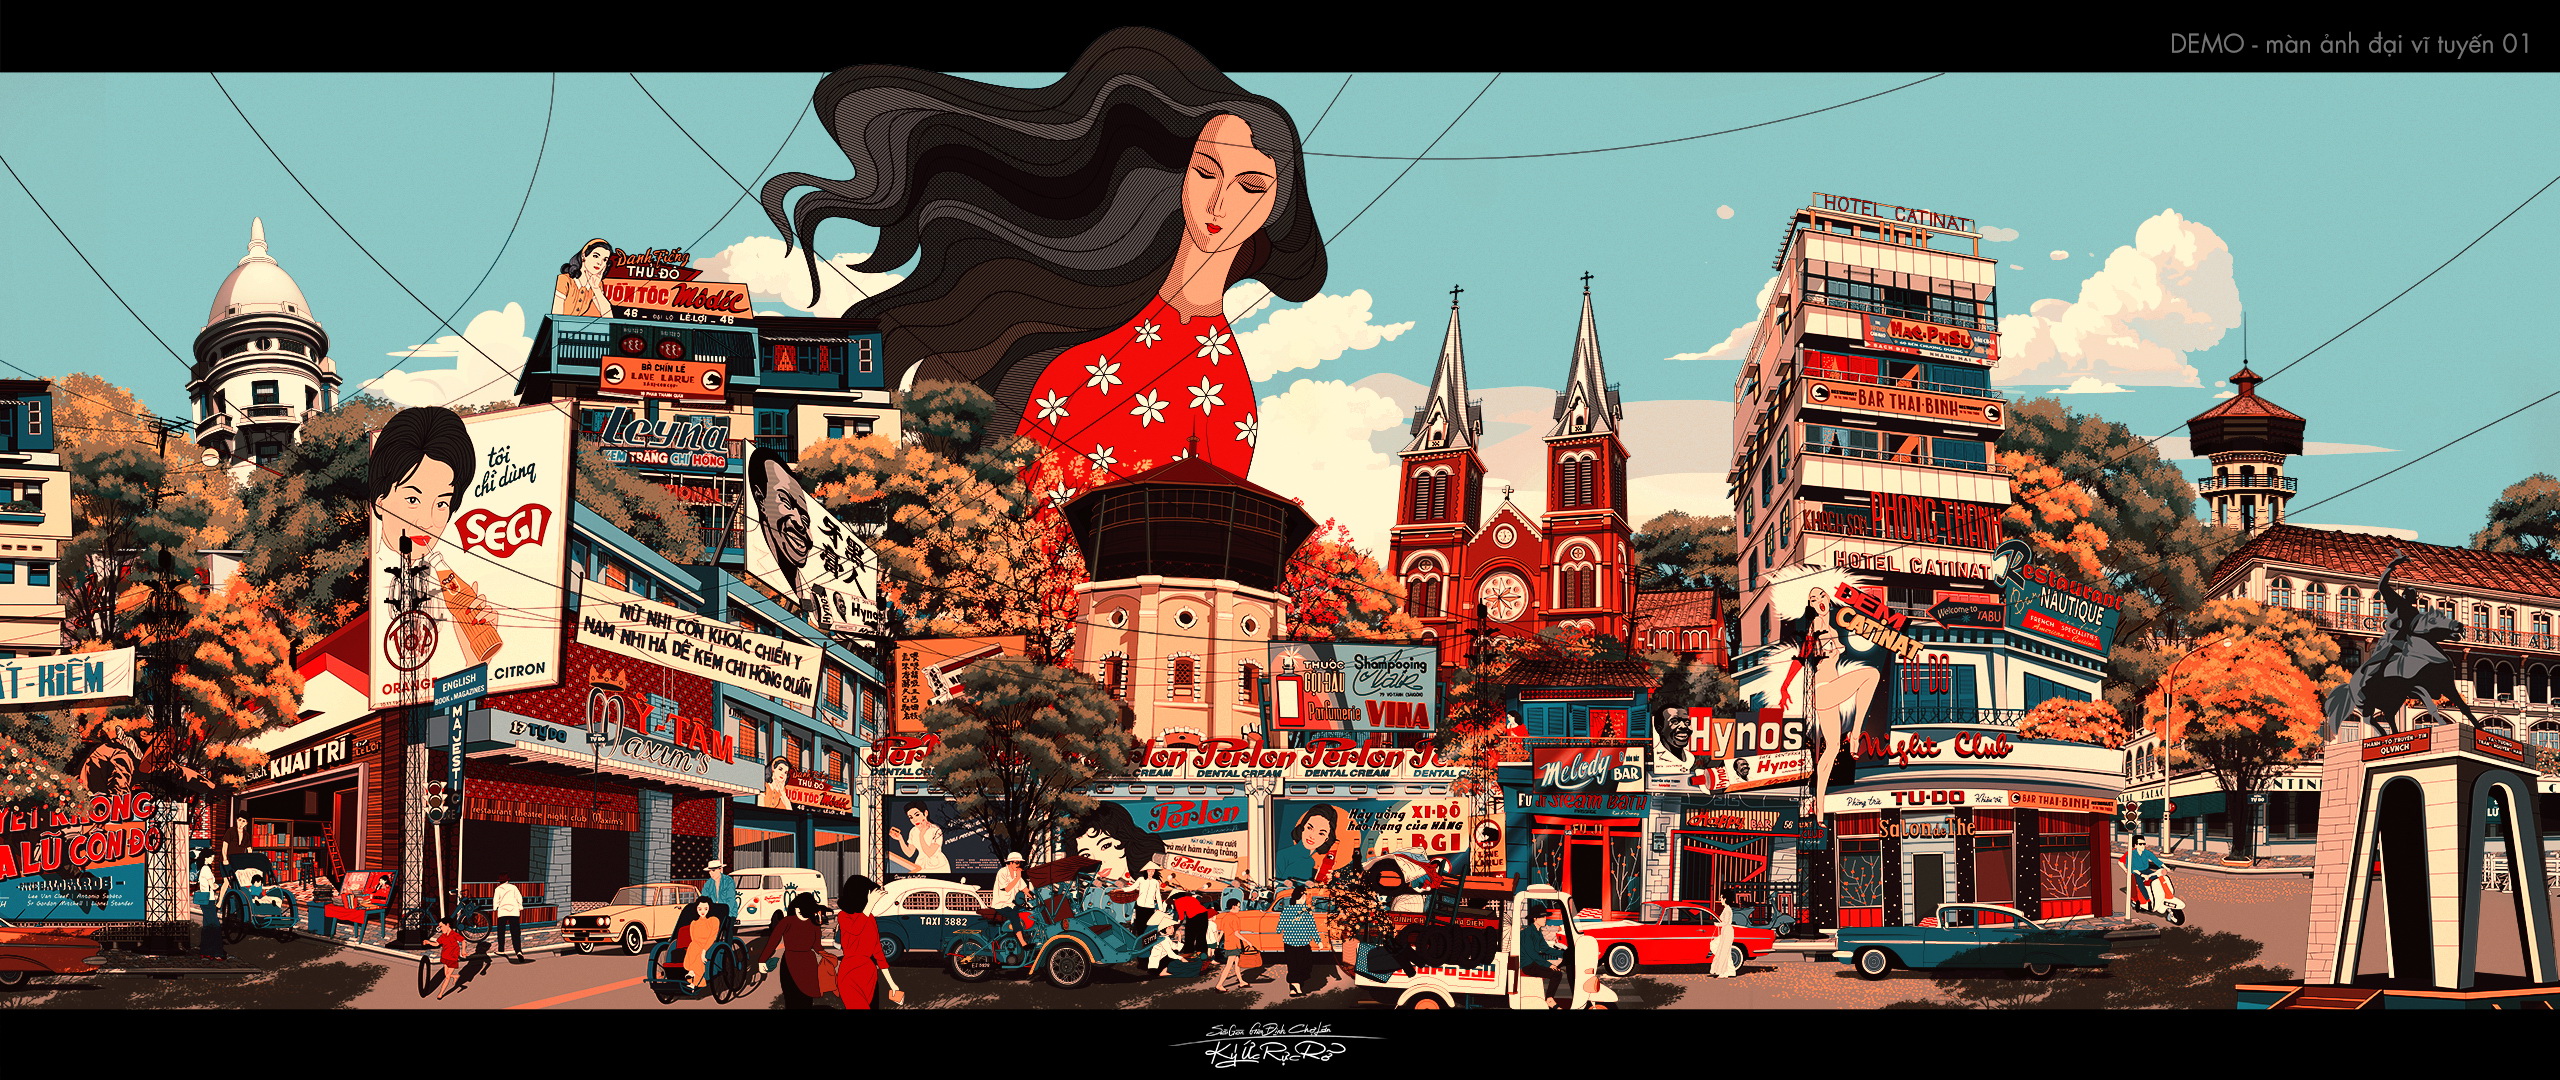 Ngắm tranh vẽ Sài Gòn của họa sĩ Pháp Jeanmarc Potlet